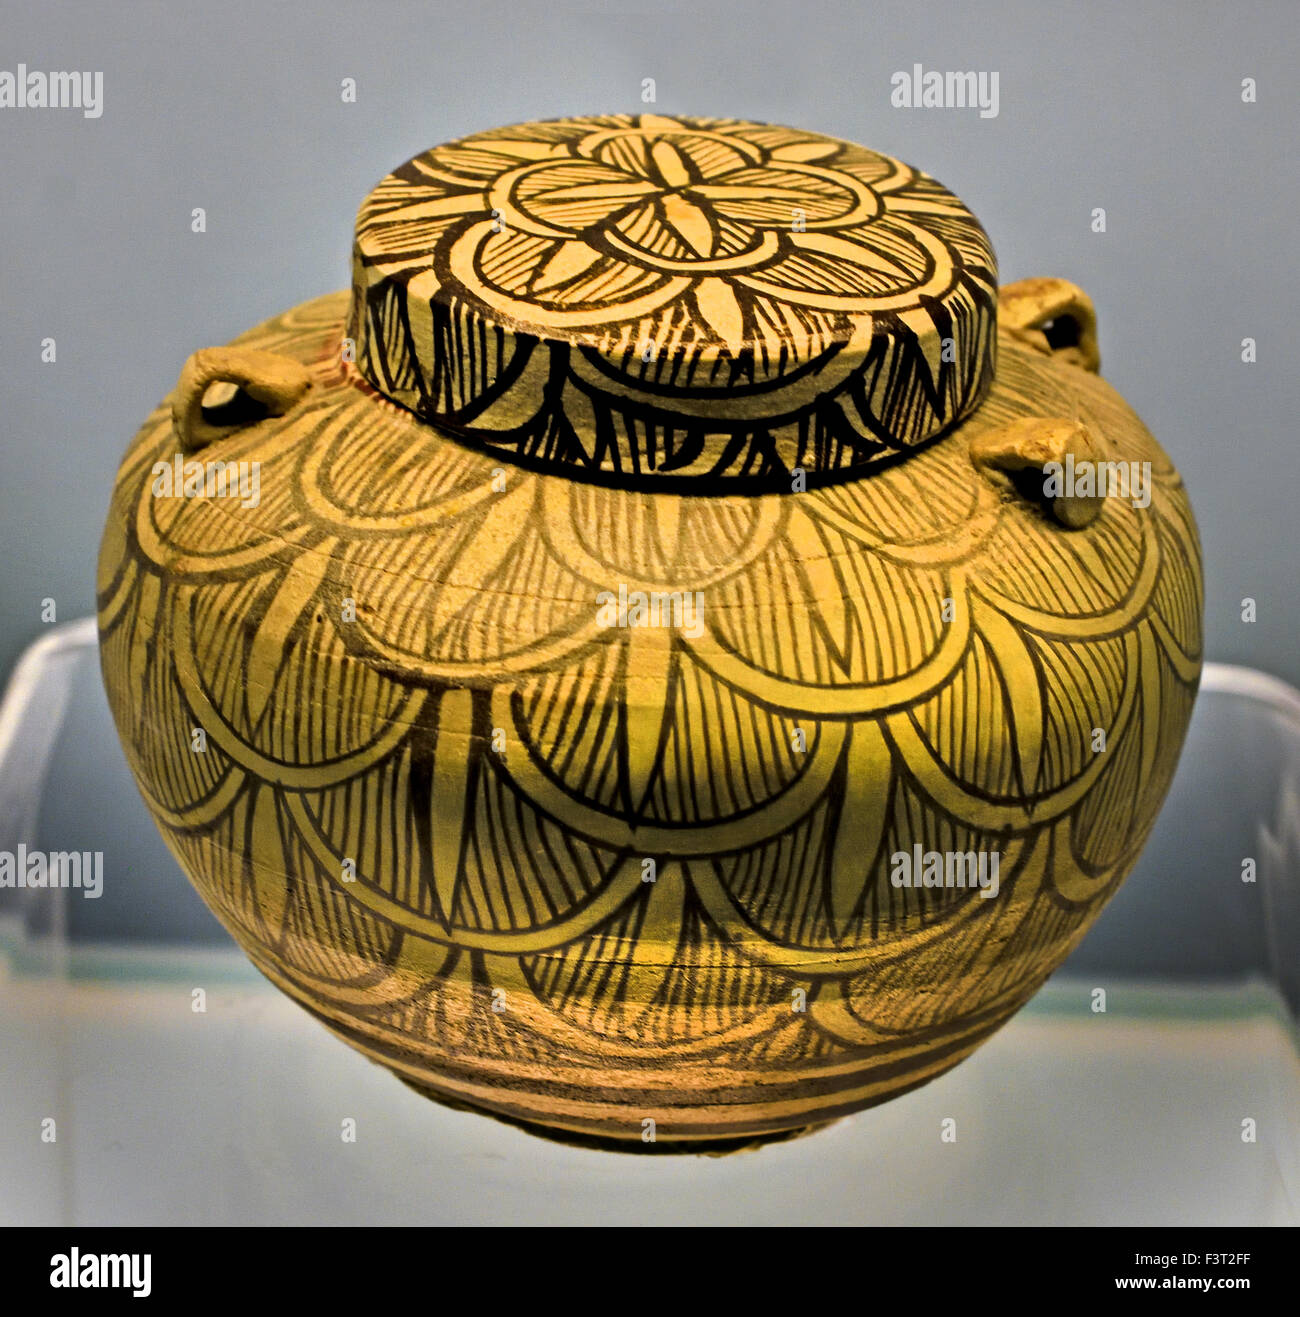 Überdachten Glas mit einem braunen Blatt-Design auf einem weißen Boden Jizhou Ware 1127 - 1368 n. Chr. südlichen Song - China Yuan-Dynastie (Shanghai Museum alter chinesischer Kunst) Stockfoto